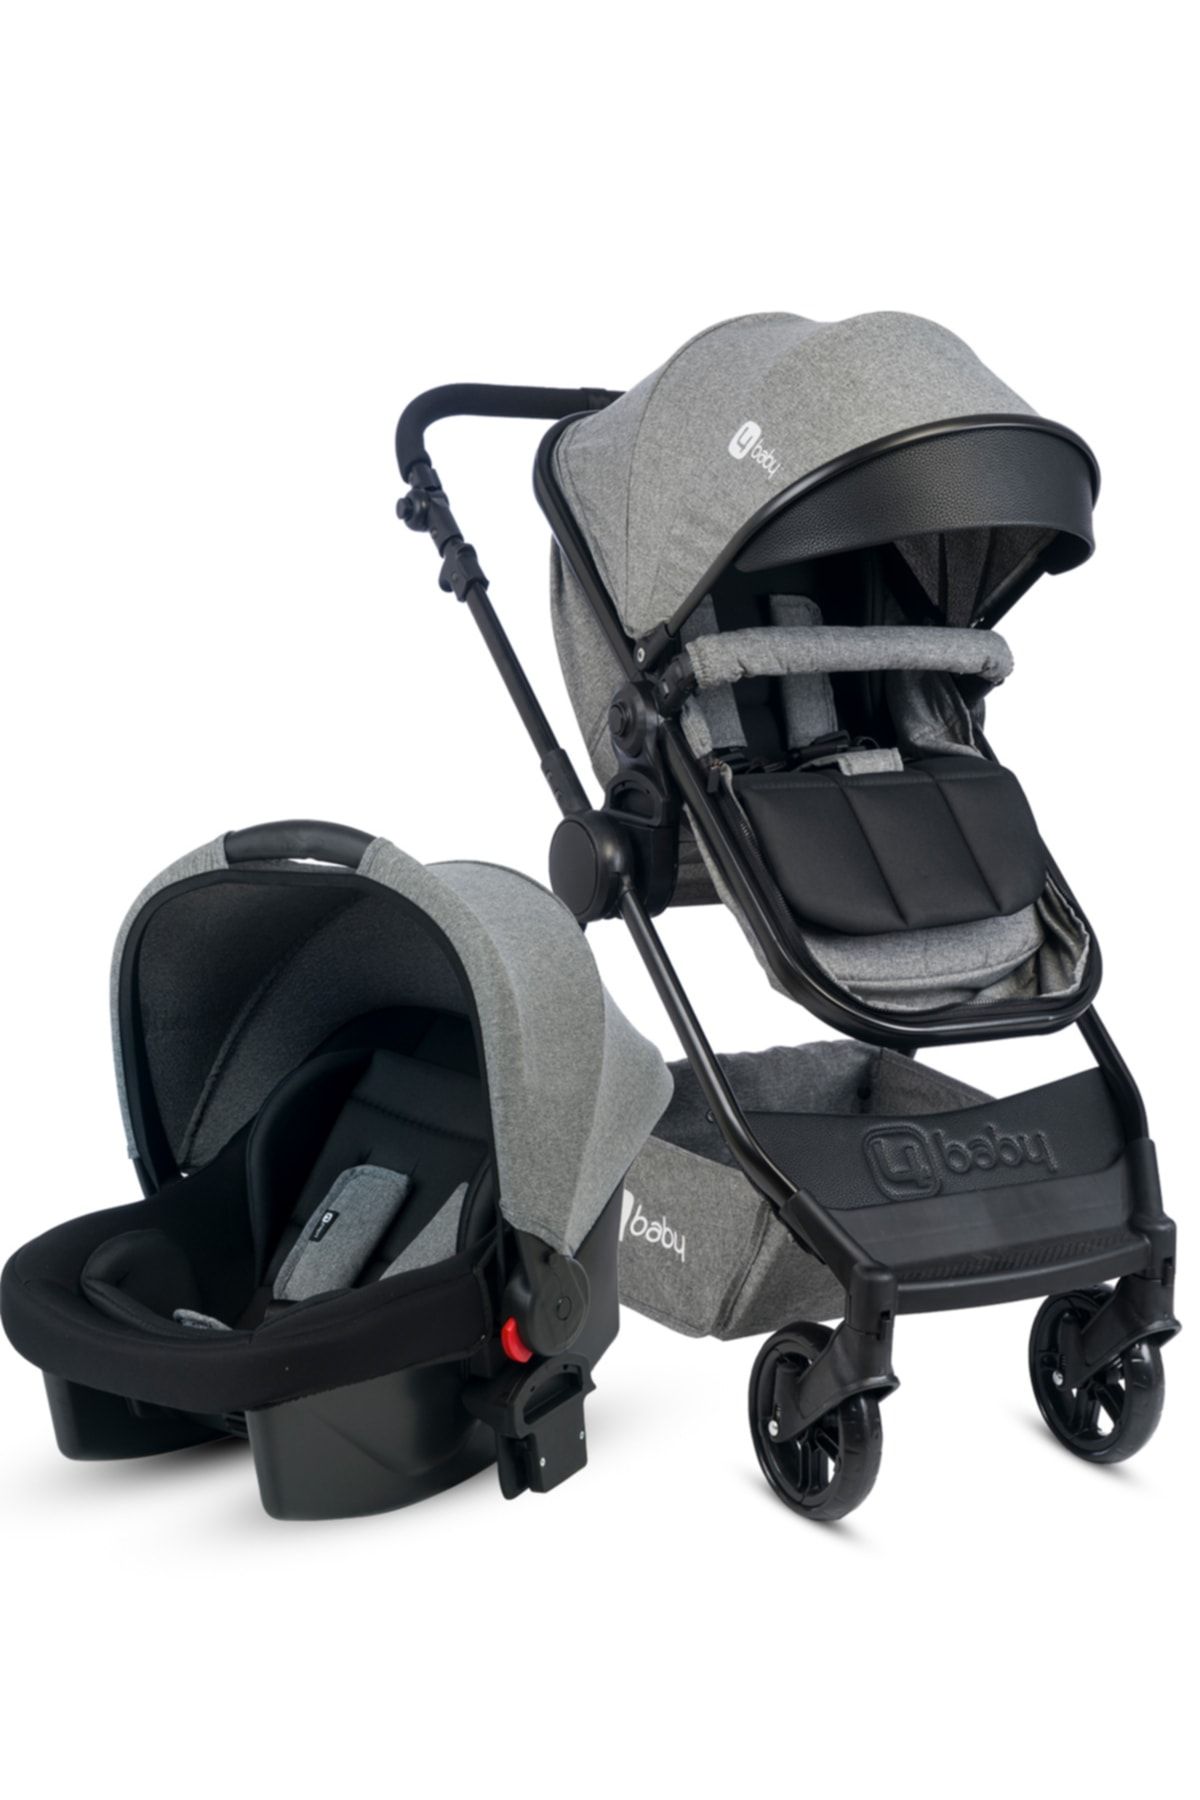 4 Baby Comfort Siyah-Gri Travel Sistem Bebek Arabası Seyahat Sistem Puset, Taşıma Koltuğu, Yağmurluk